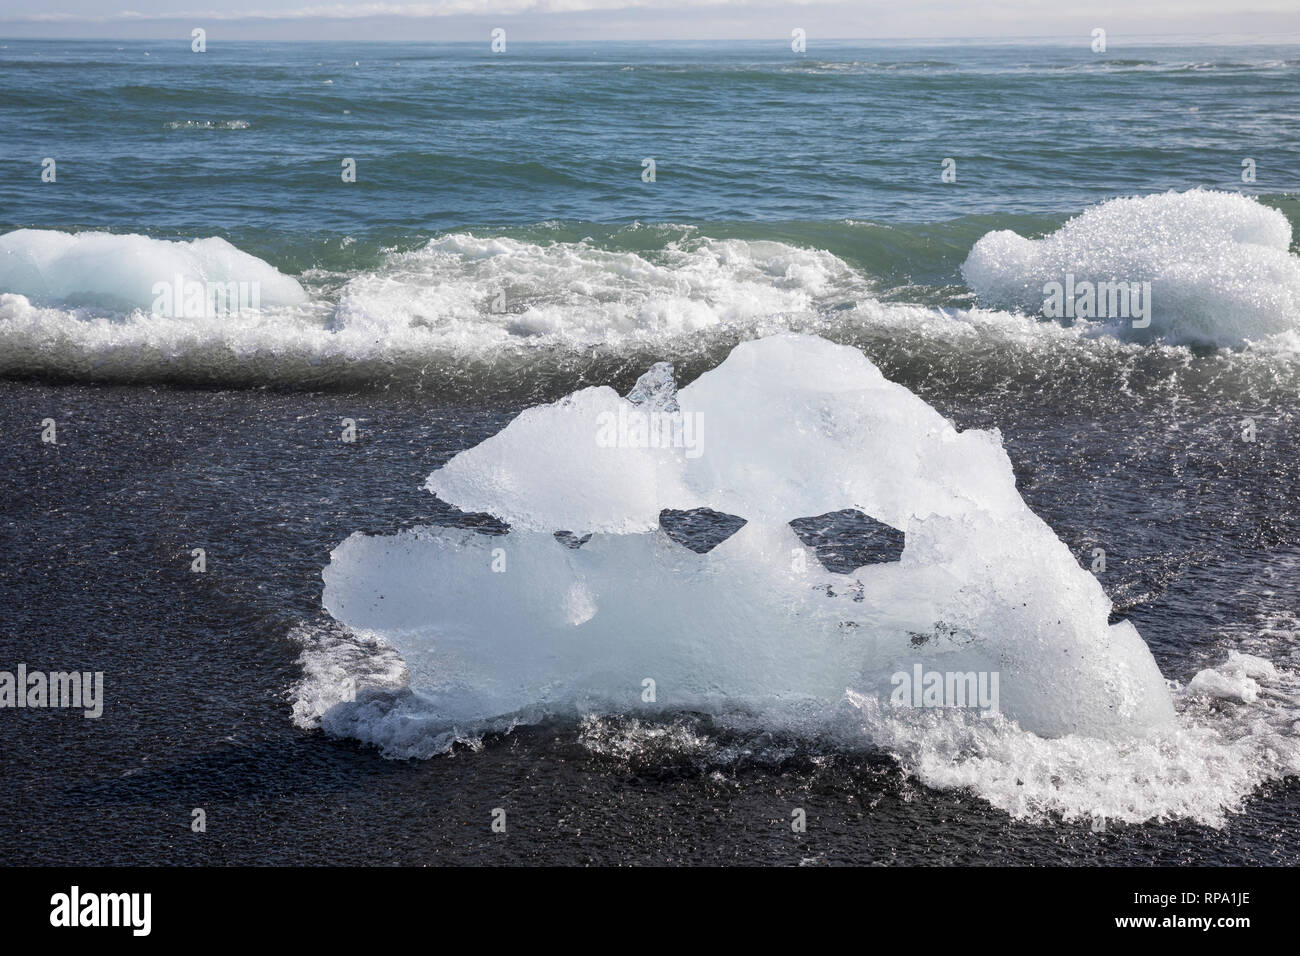 Eisbrocken im Meerwasser am Strand vor der Gletscherlagune Jökulsárlón, Jökulsarlon,  Jokulsarlon, Diamandstrand, Eislagune, Lagune mit Eis, Gletscher Stock Photo